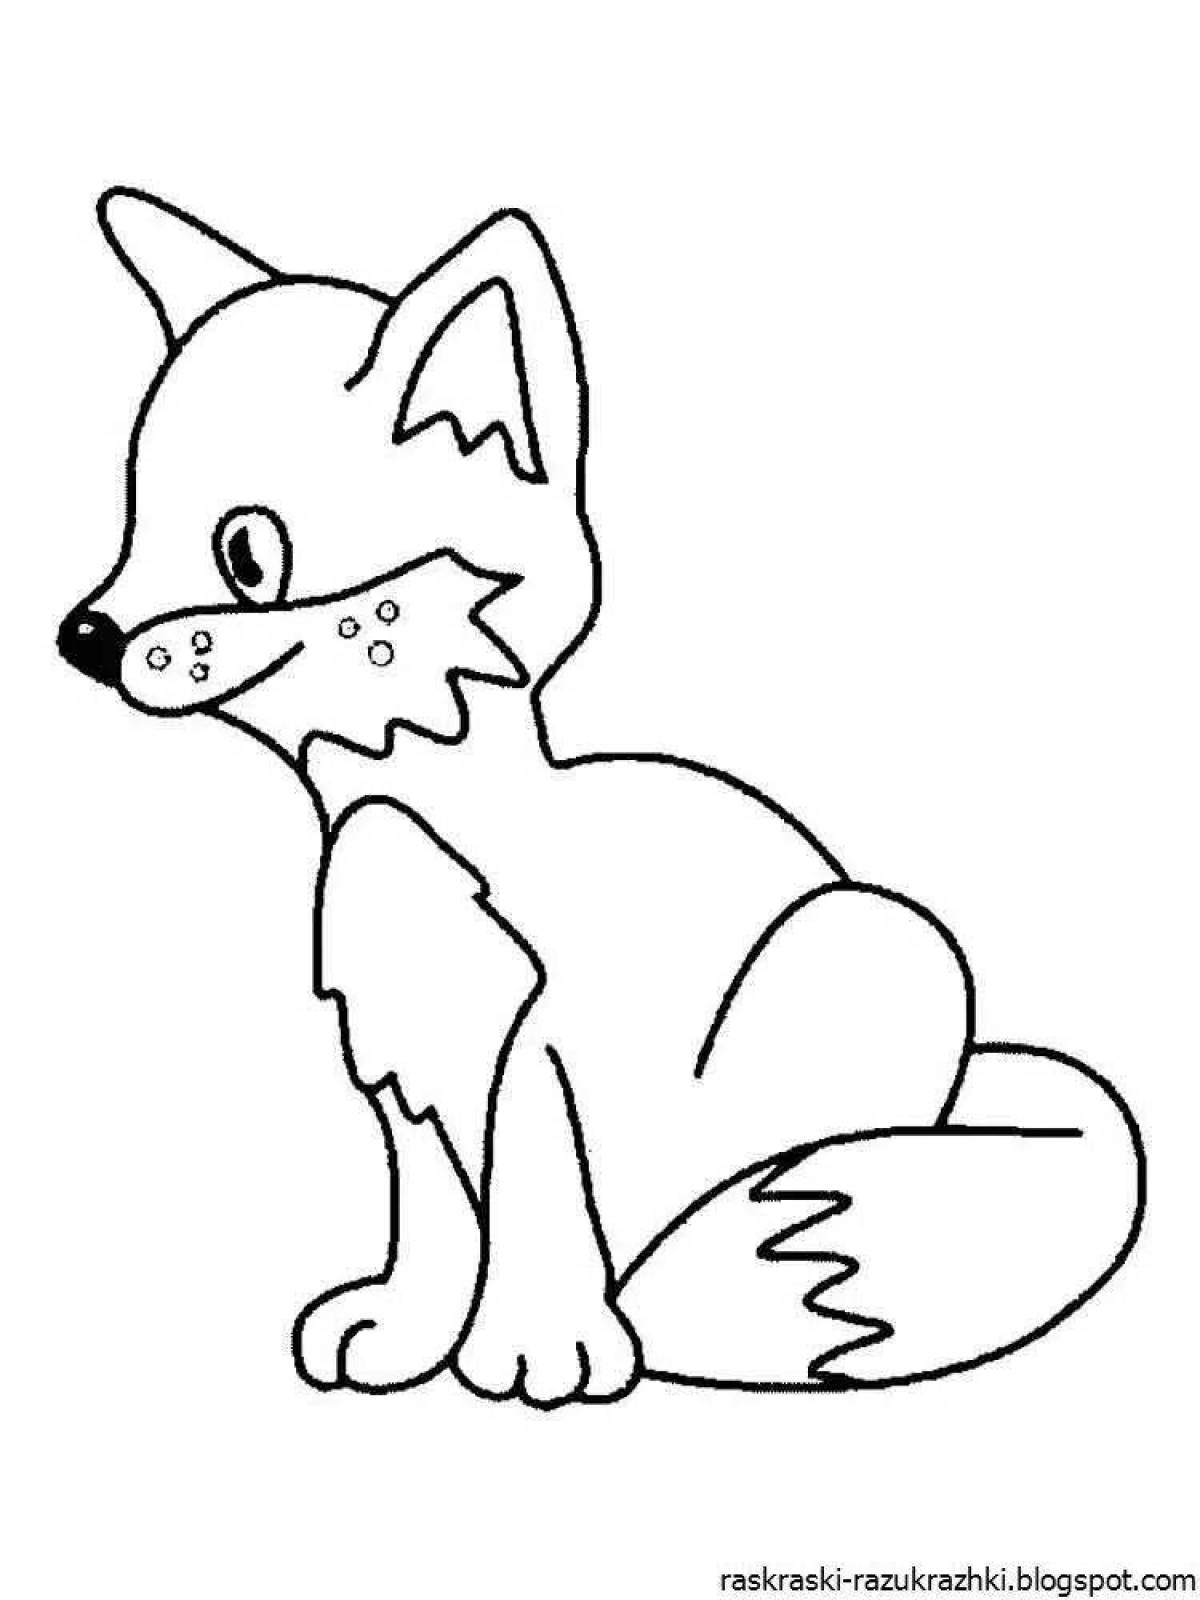 Fine fox coloring